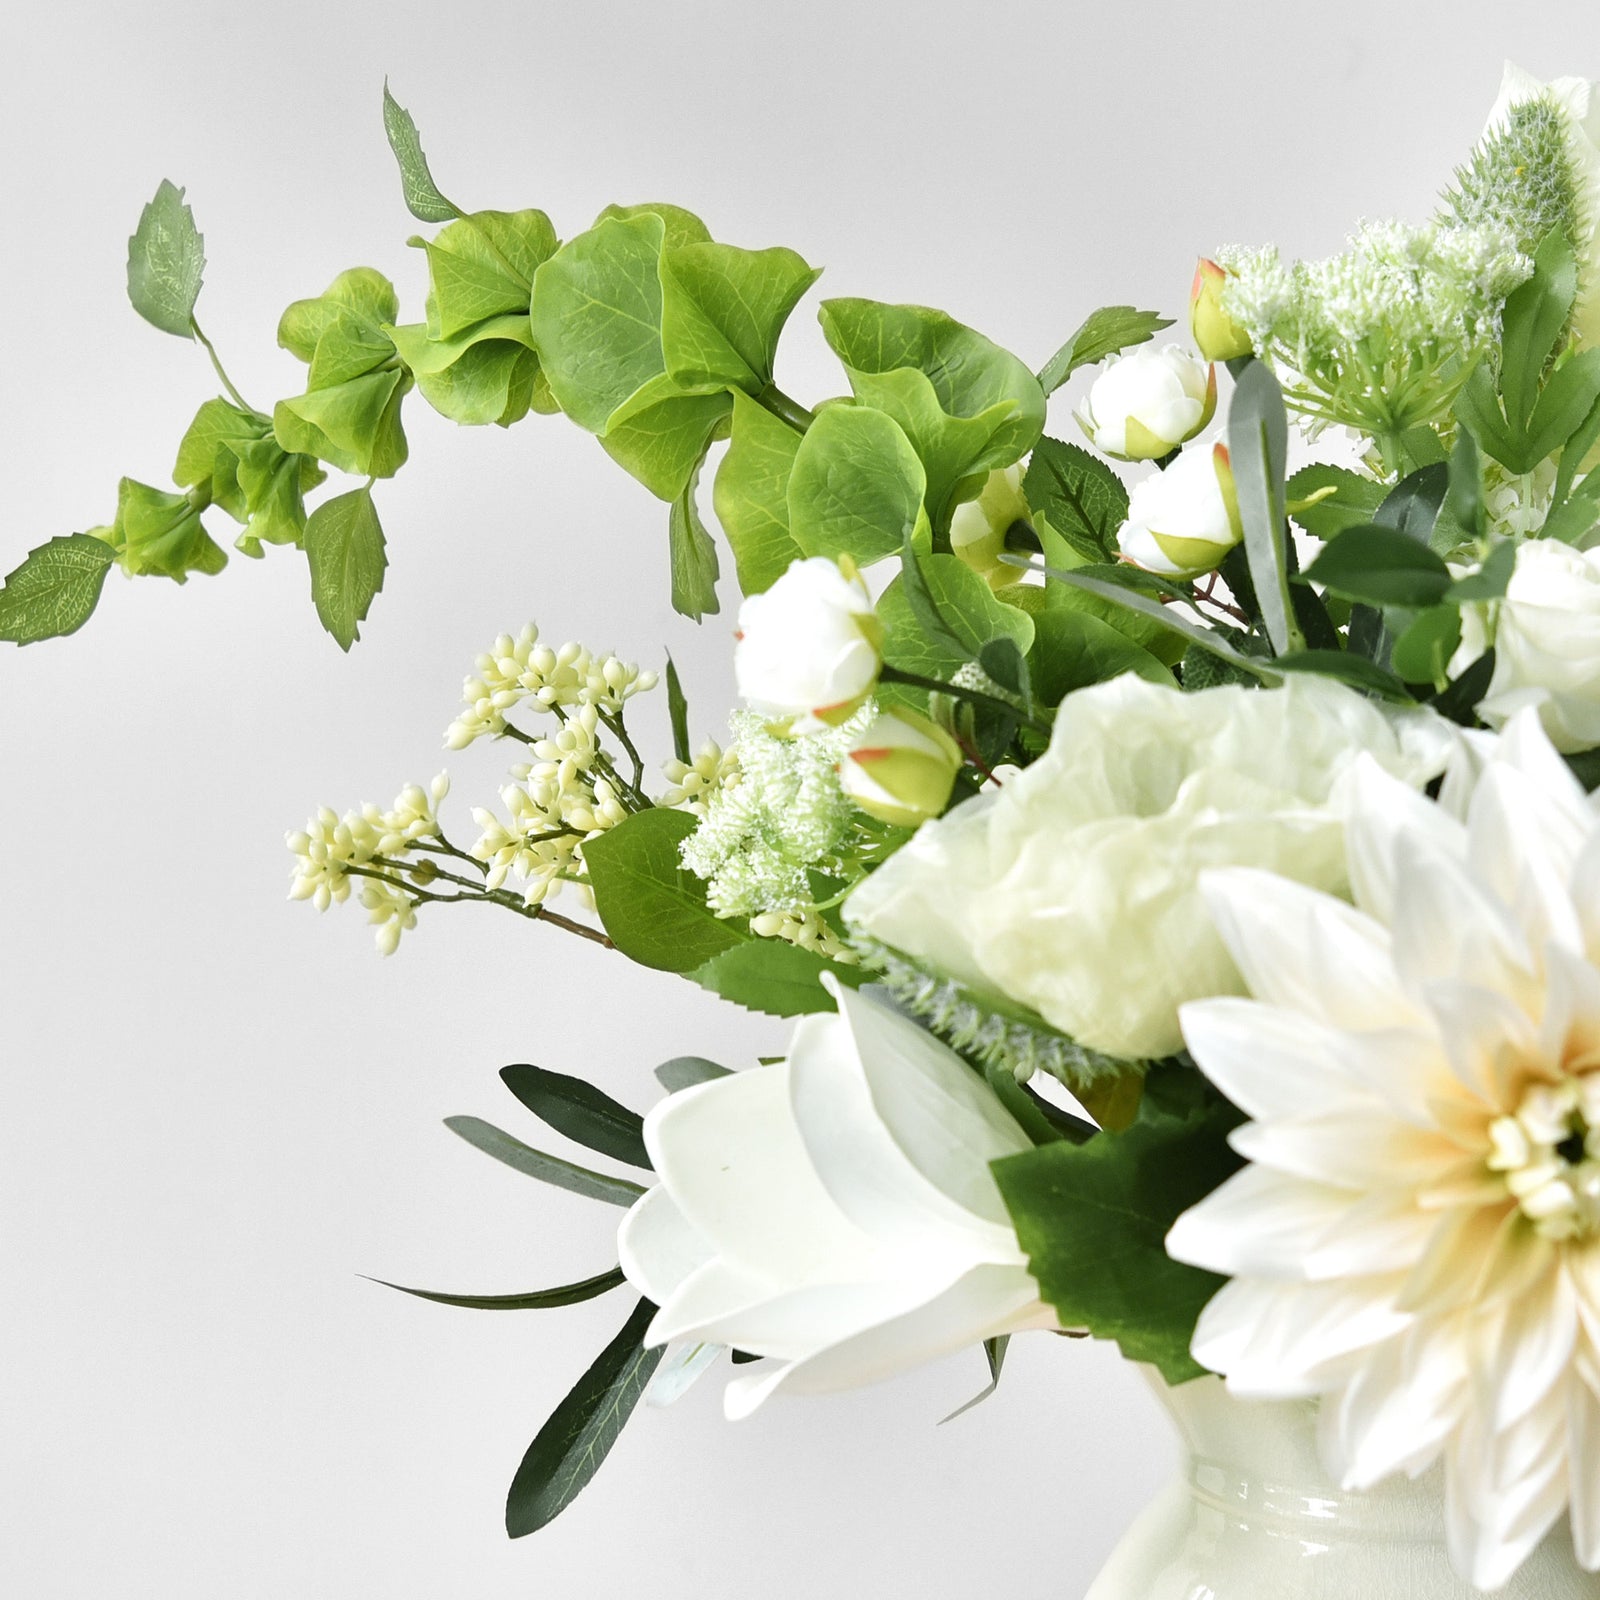 2 Stems of Artificial Bells of Ireland Flowers | Filler Flowers Floral Arrangement